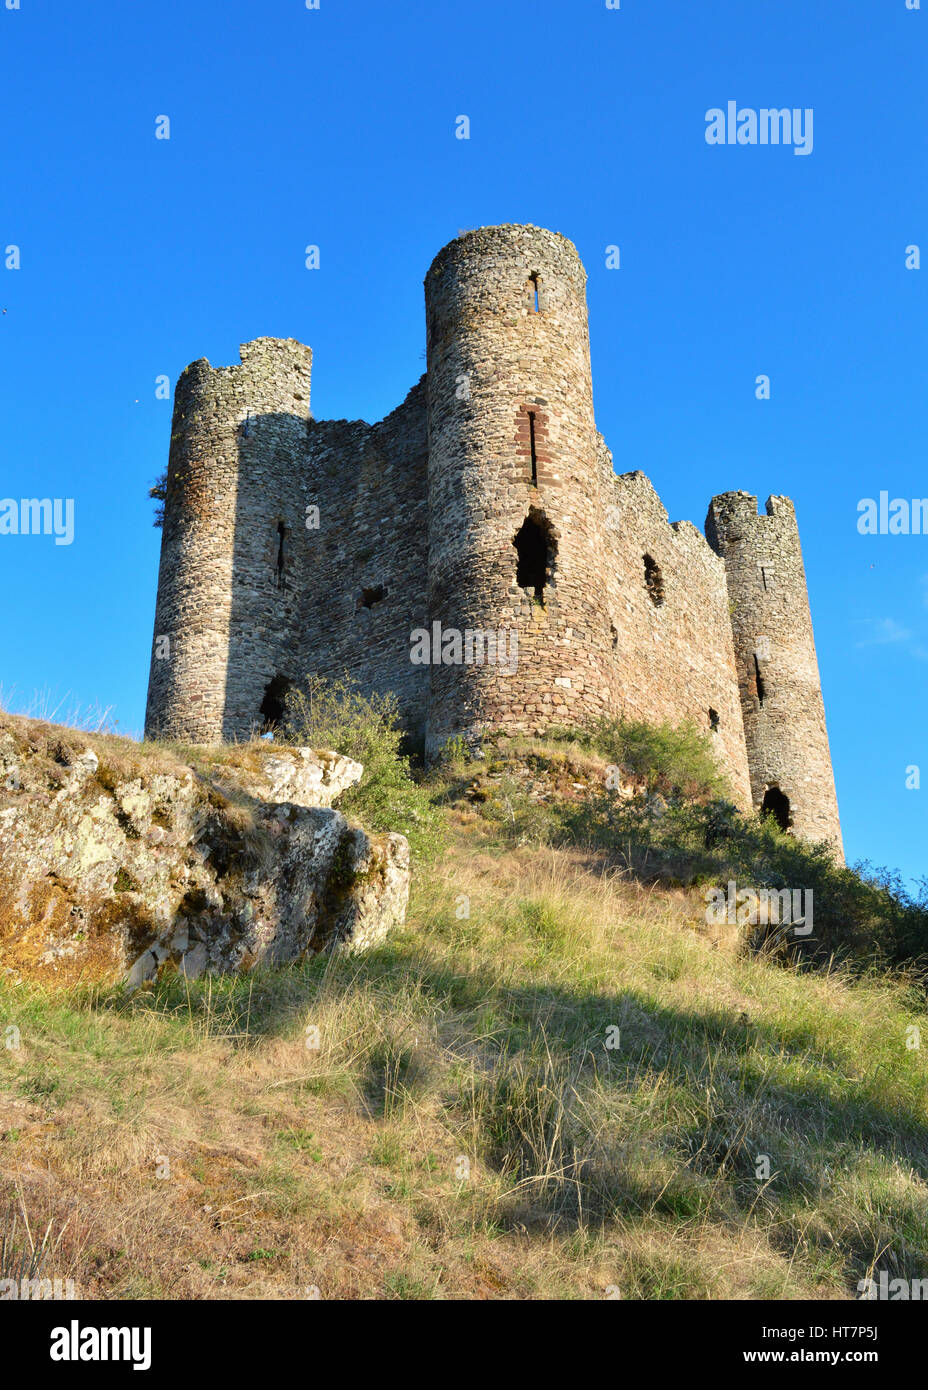 Ruines d'un château médiéval sur une colline en France. Banque D'Images